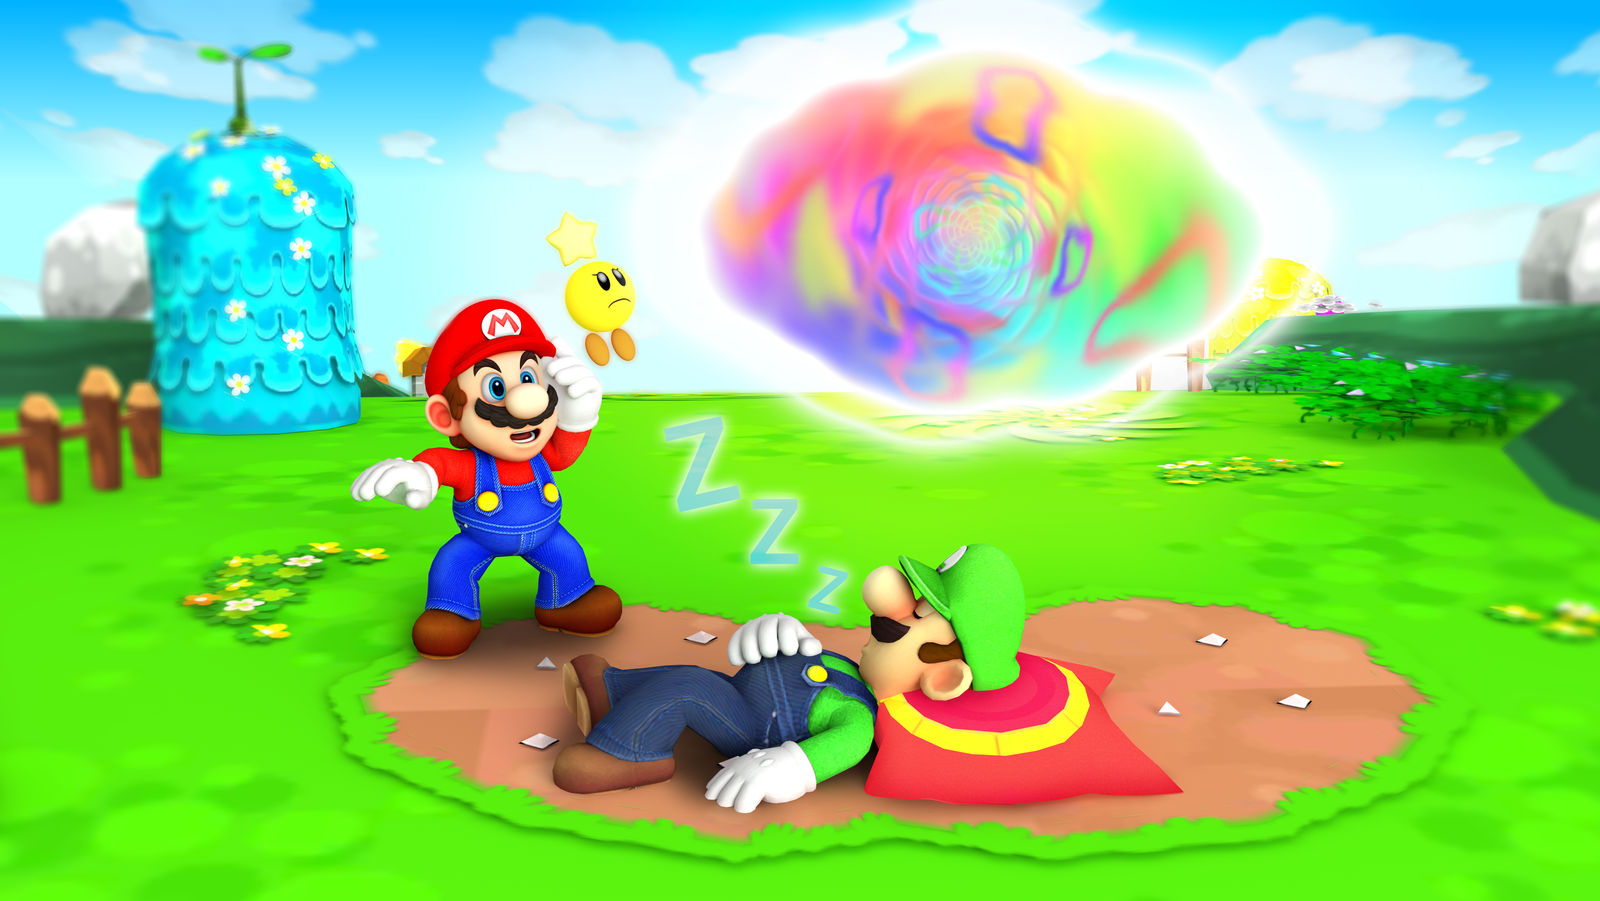 Mario luigi dream. Mario and Luigi Dream Team.